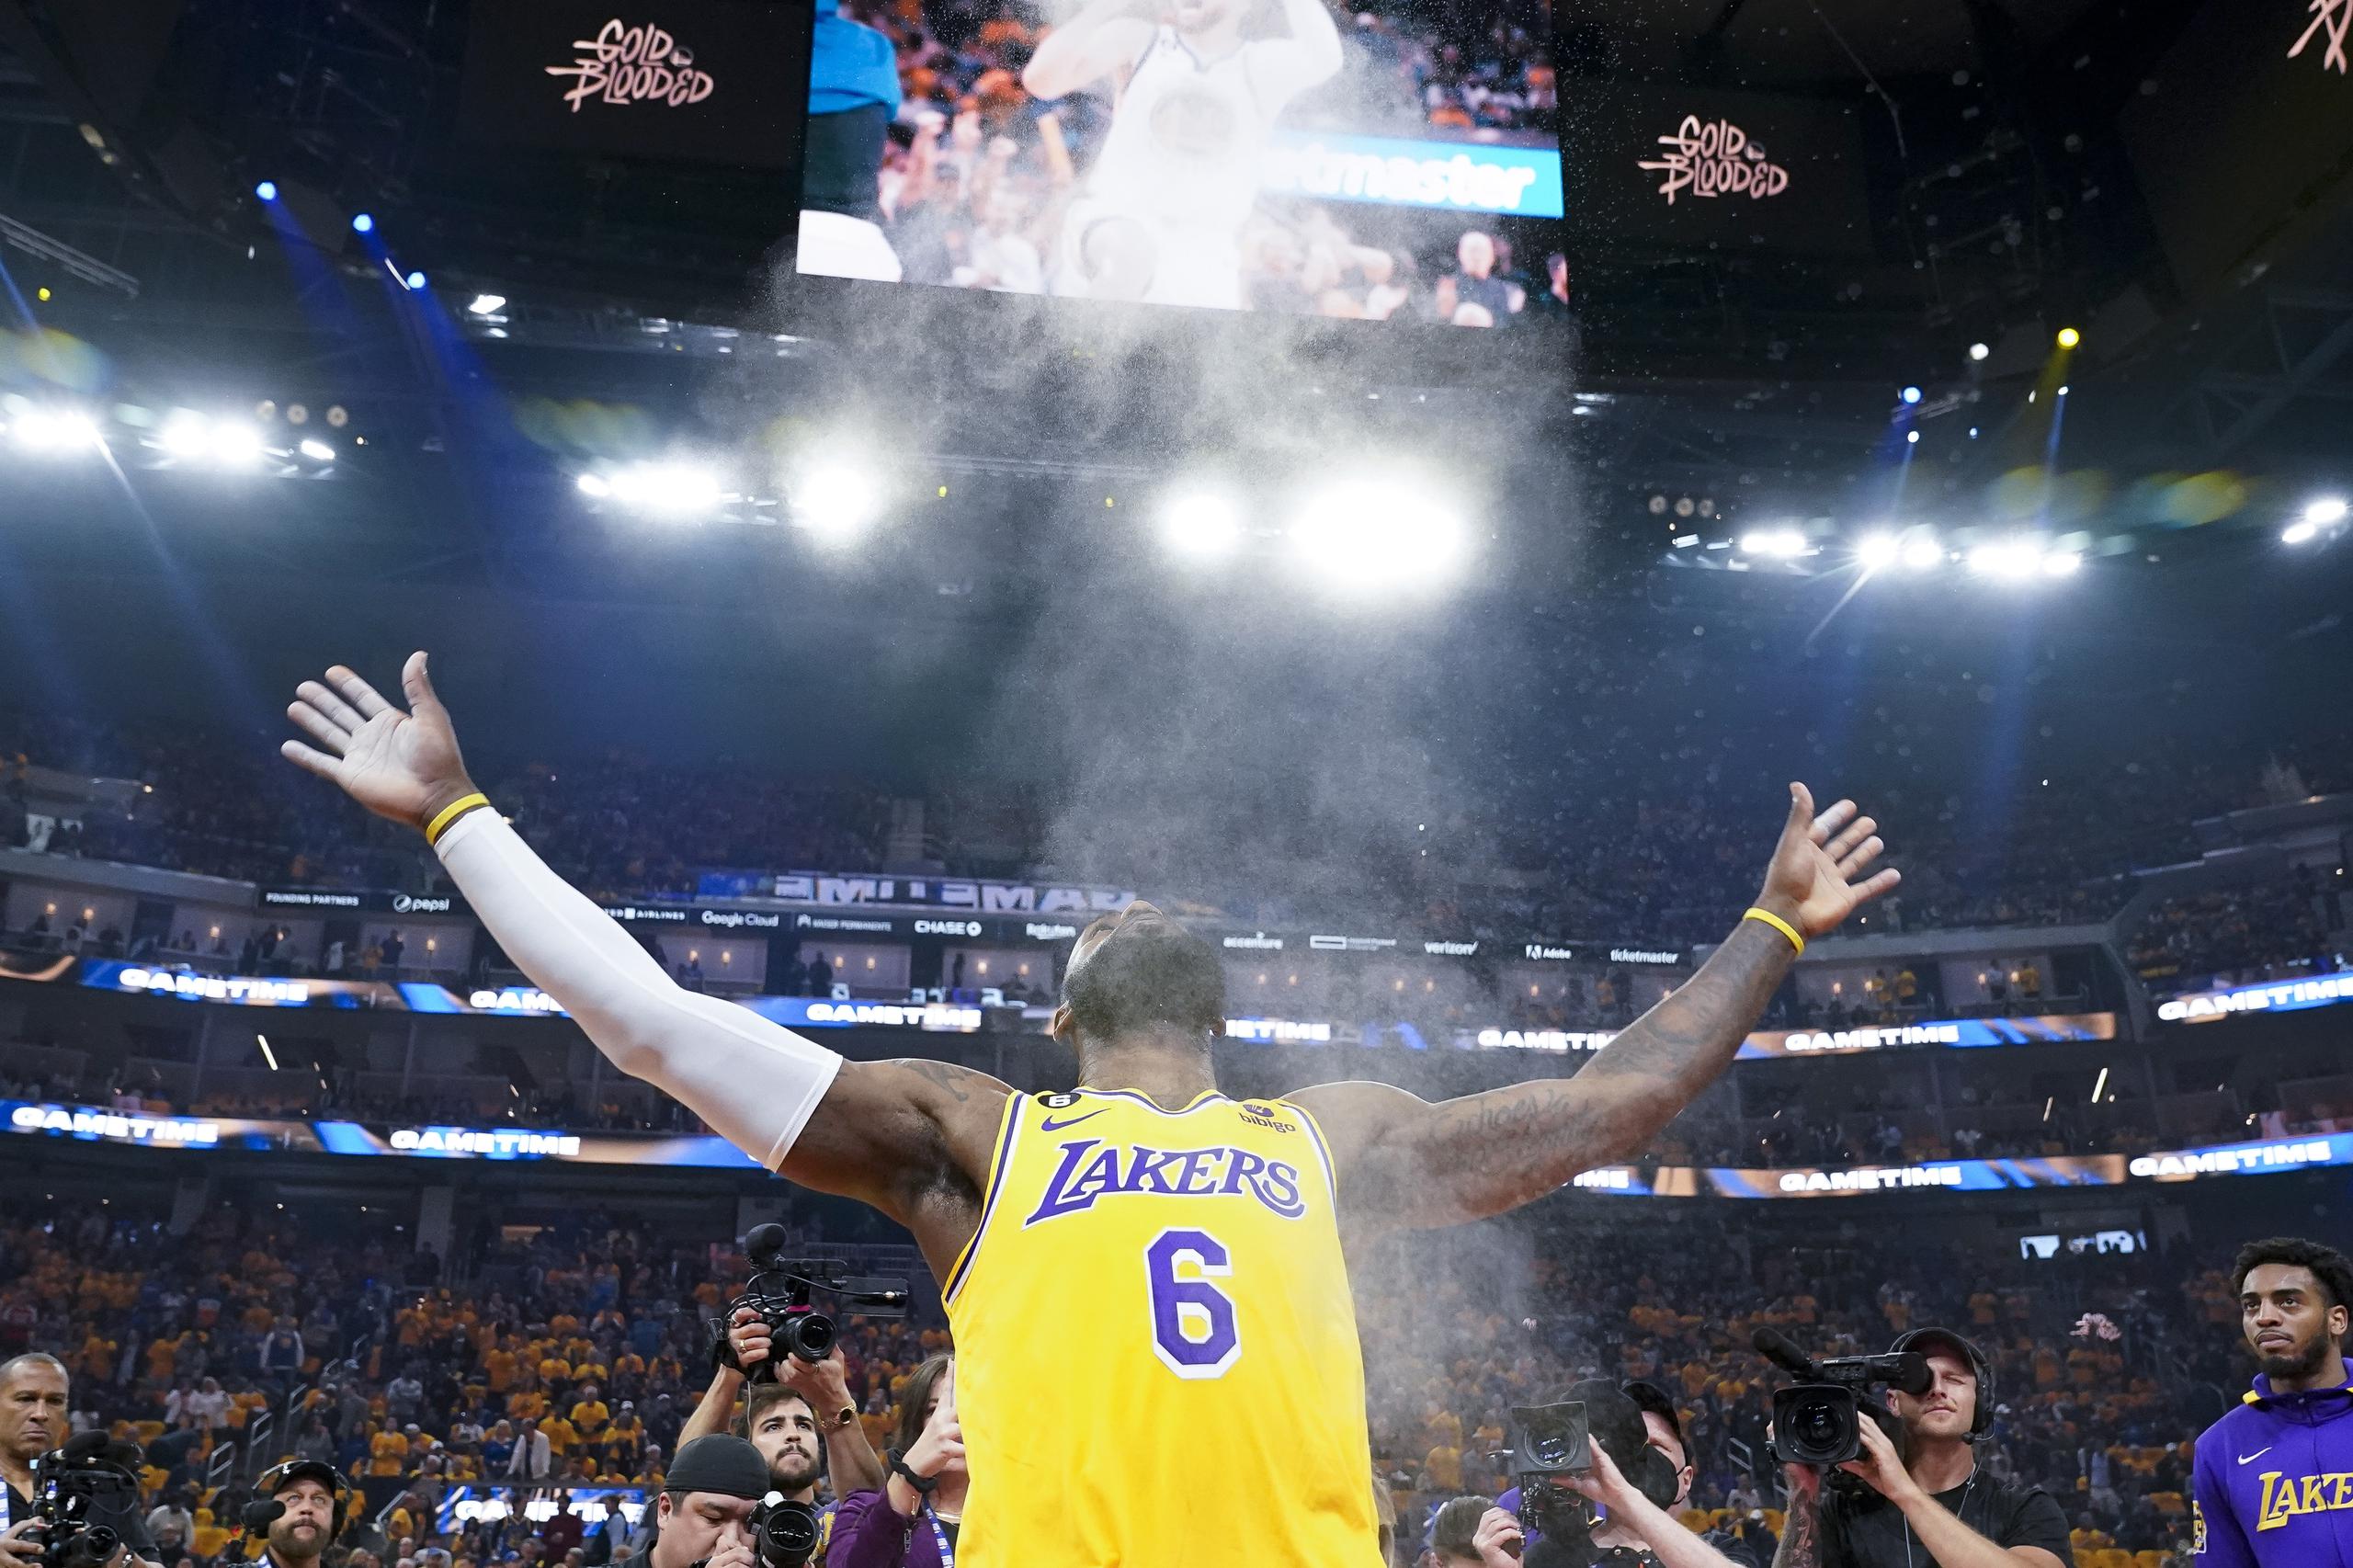 El entrenador de los Lakers, Darvin Ham, ha descrito a LeBron James como una especie única en su clase. Uno de los mejores cinco jugadores de la NBA en la historia entre los vivos y muertos.